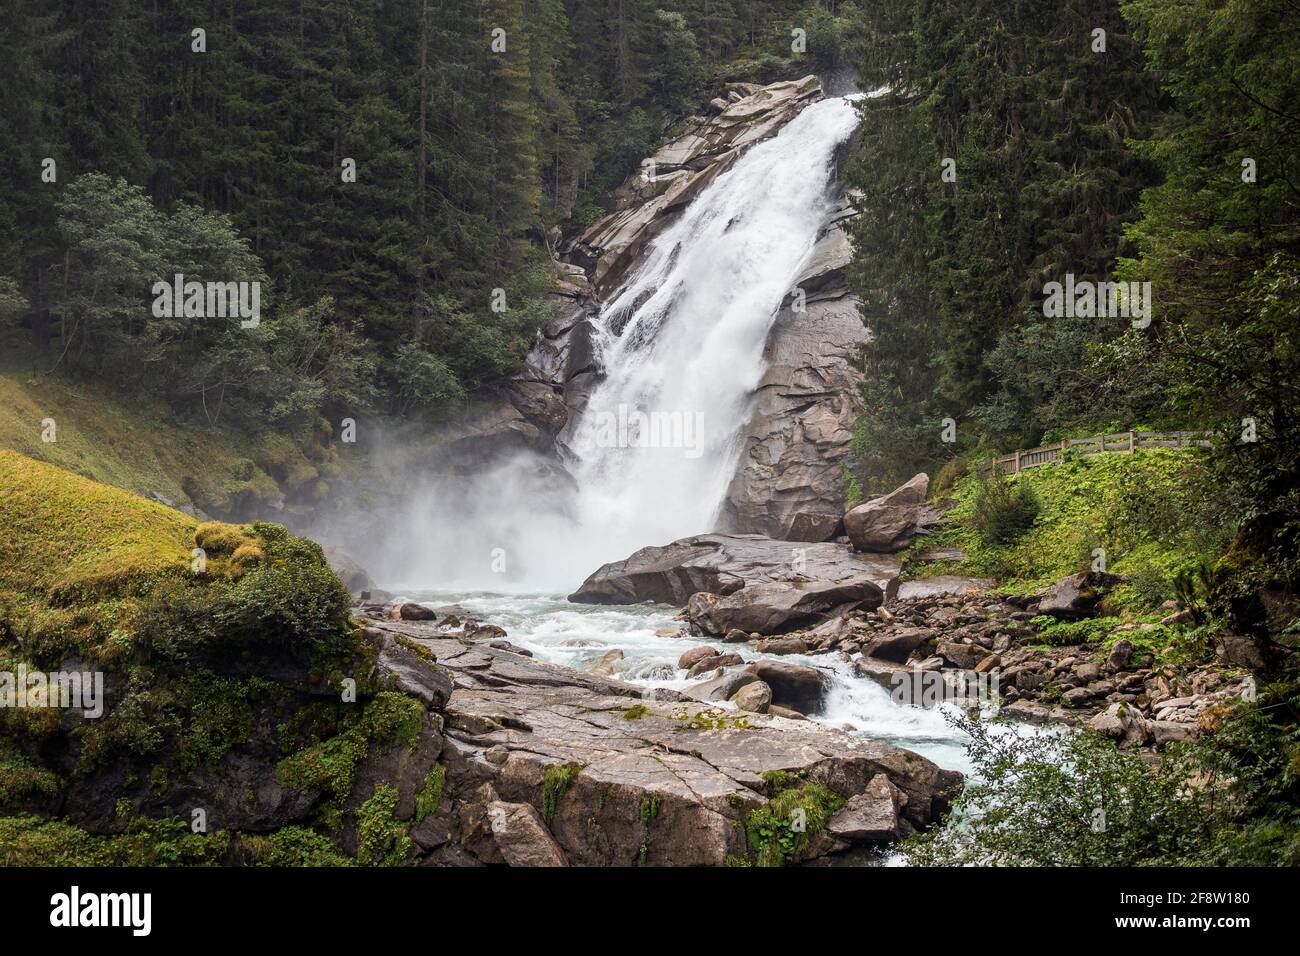 Les cascades de Krimml (Krimmler Wasserfälle). Alpes autrichiennes. Europe. Banque D'Images